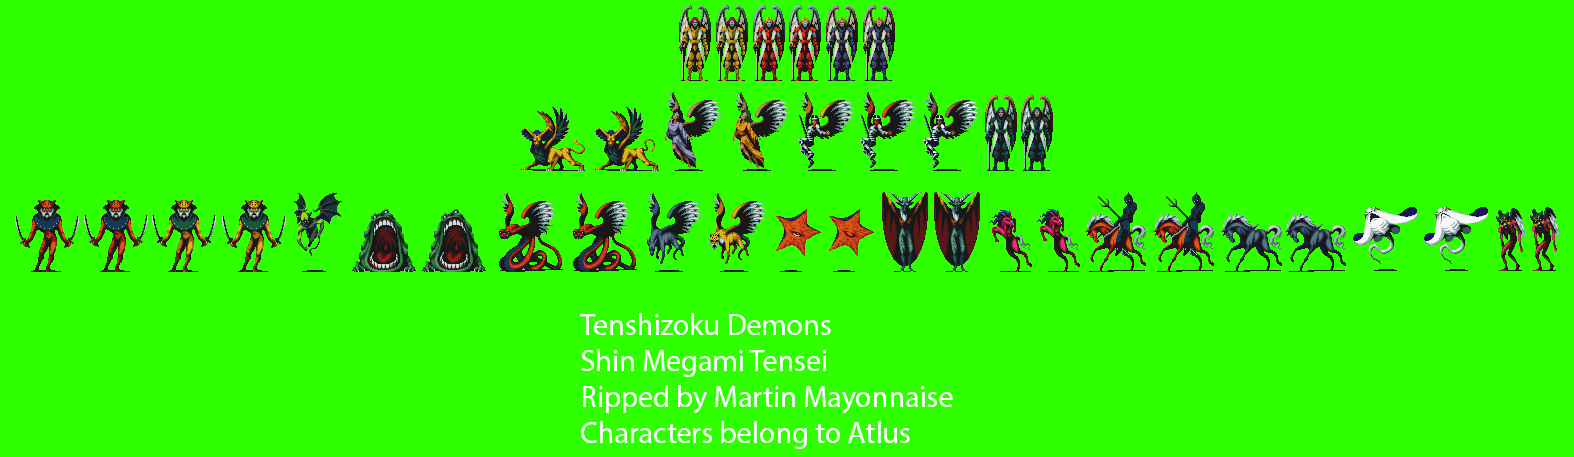 Shin Megami Tensei (JPN) - Tenshizoku